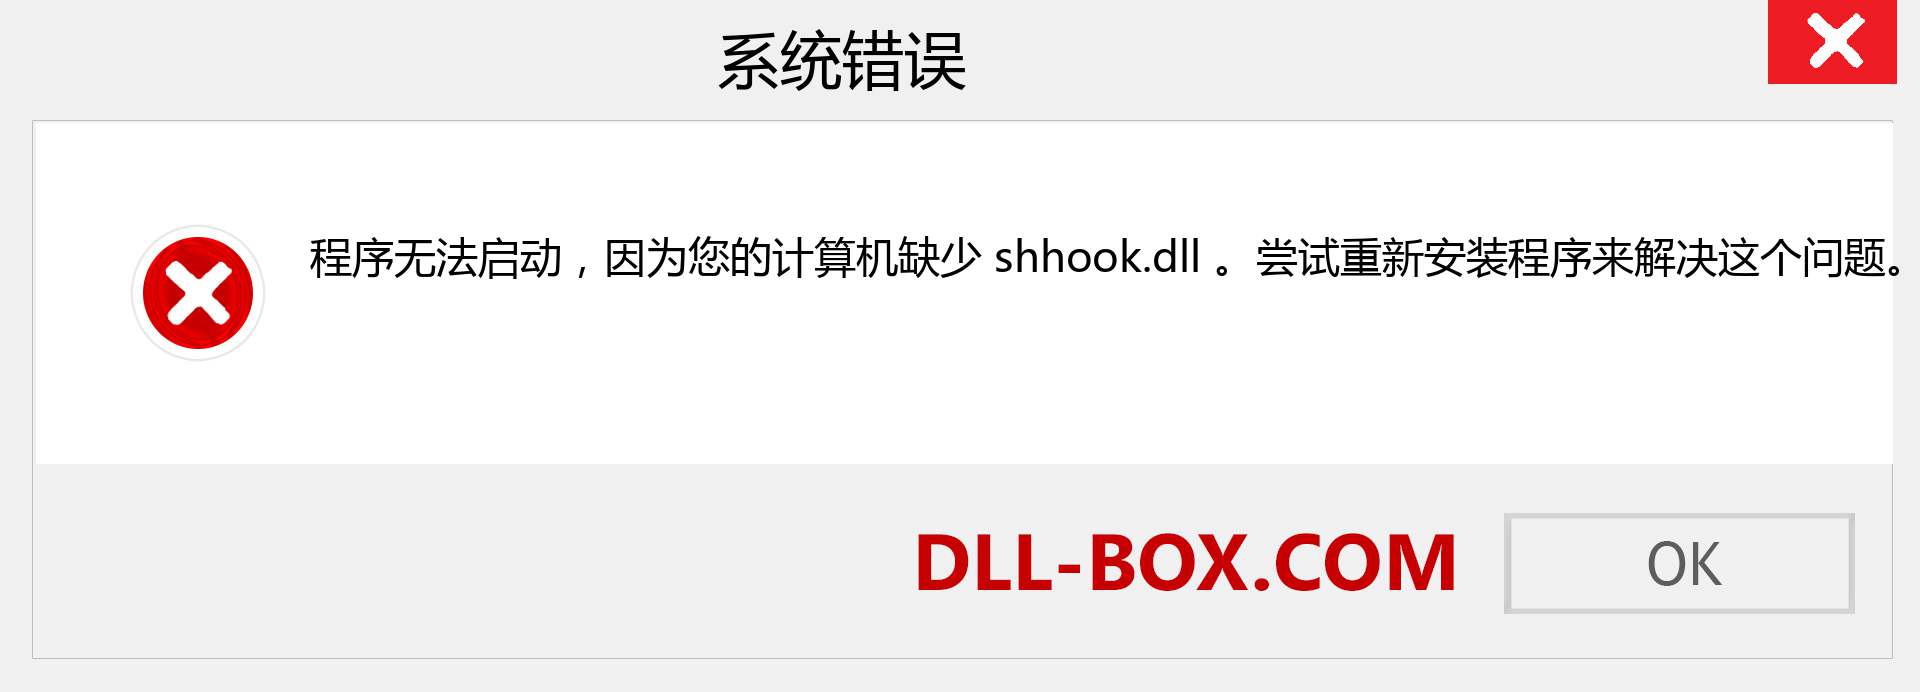 shhook.dll 文件丢失？。 适用于 Windows 7、8、10 的下载 - 修复 Windows、照片、图像上的 shhook dll 丢失错误